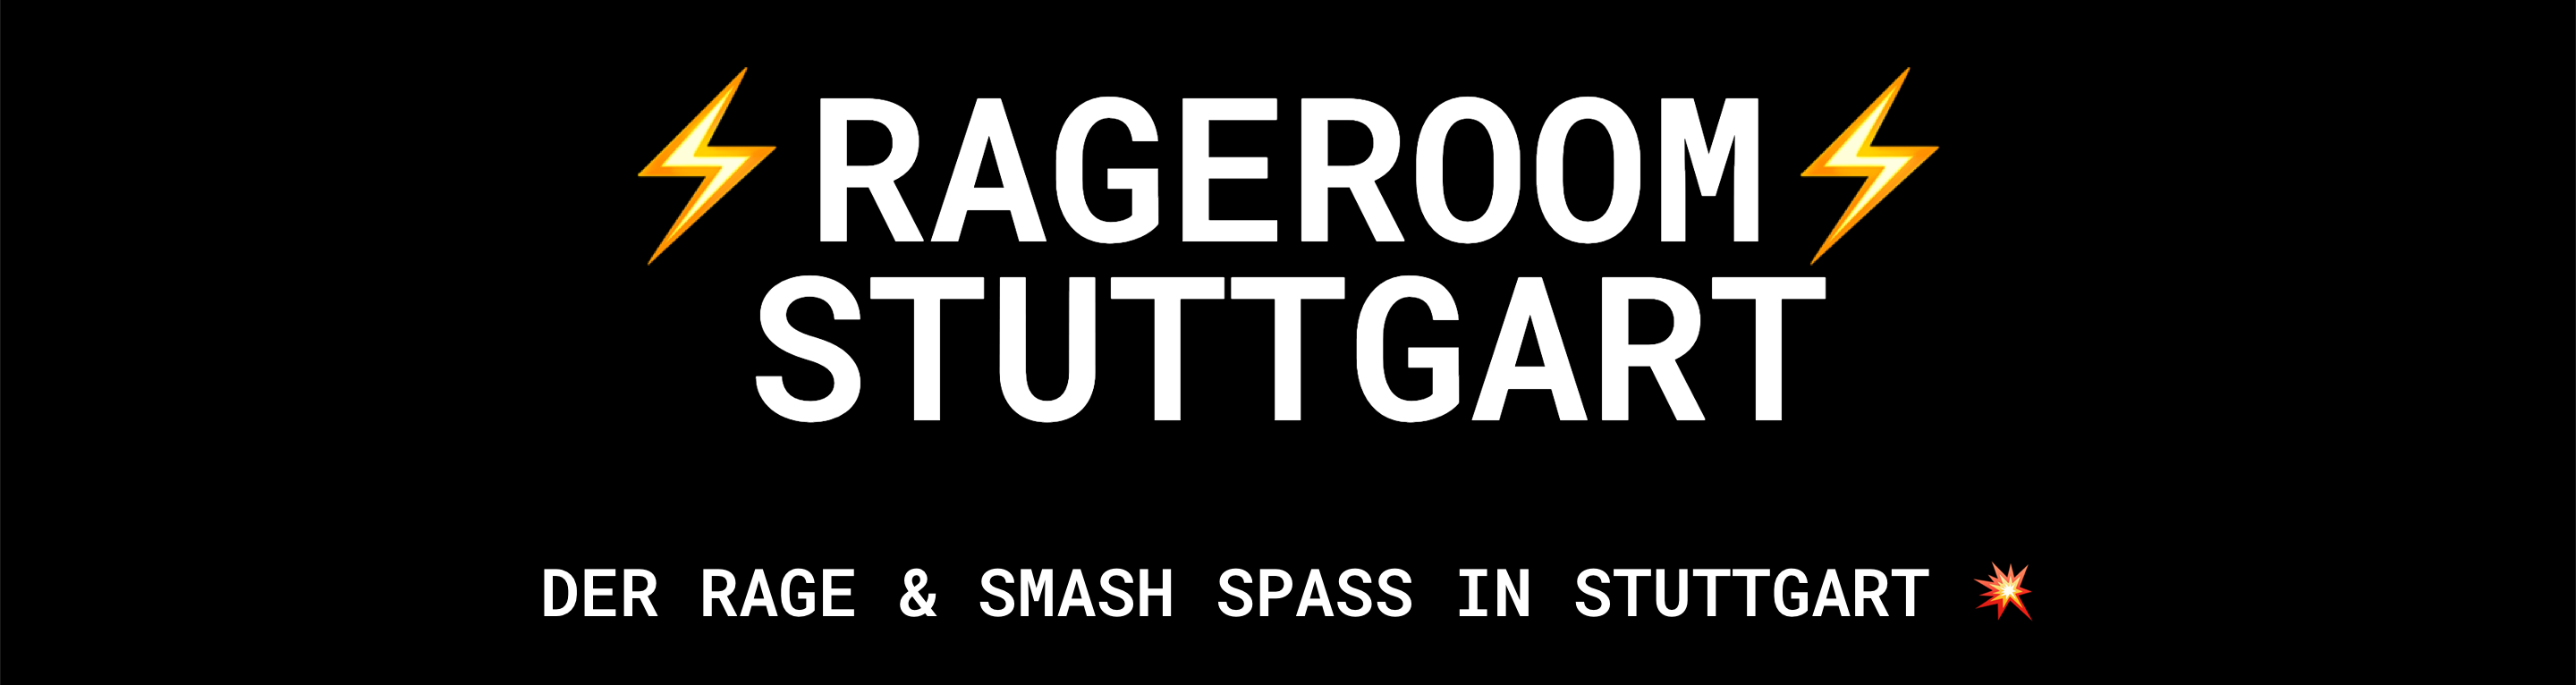 Rageroom Stuttgart Banner